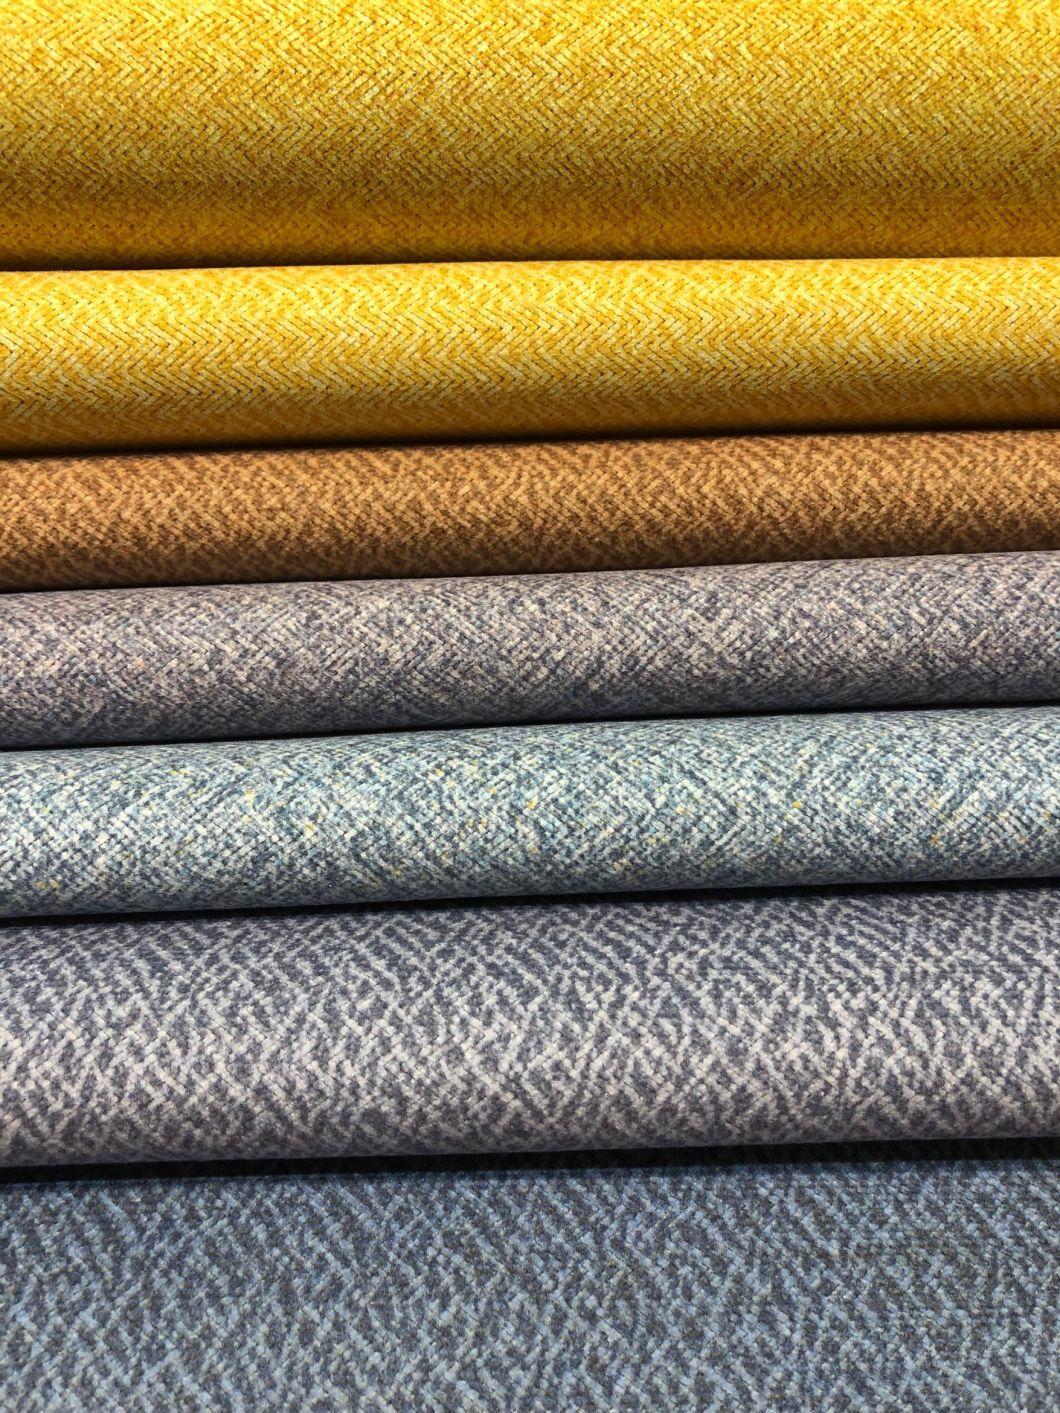 New Designs Printed Knitting Velvet Furniture Fabric